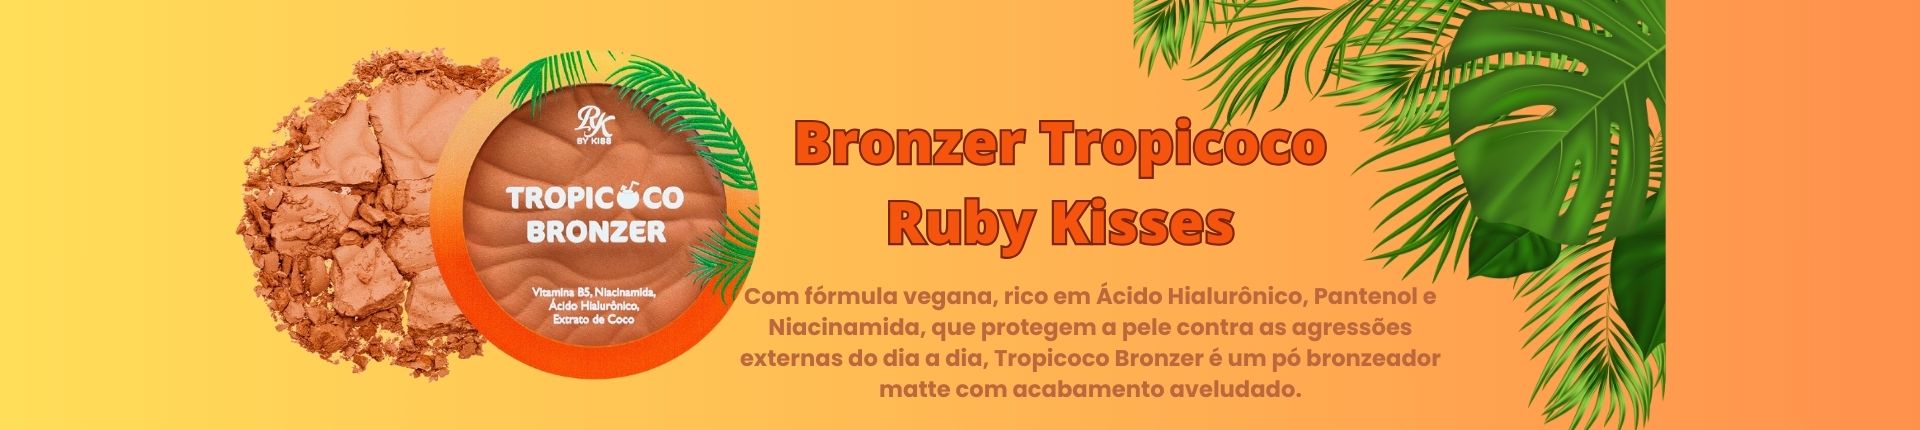 Bronzer Tropicoco Pé na Areia Ruby Kisses